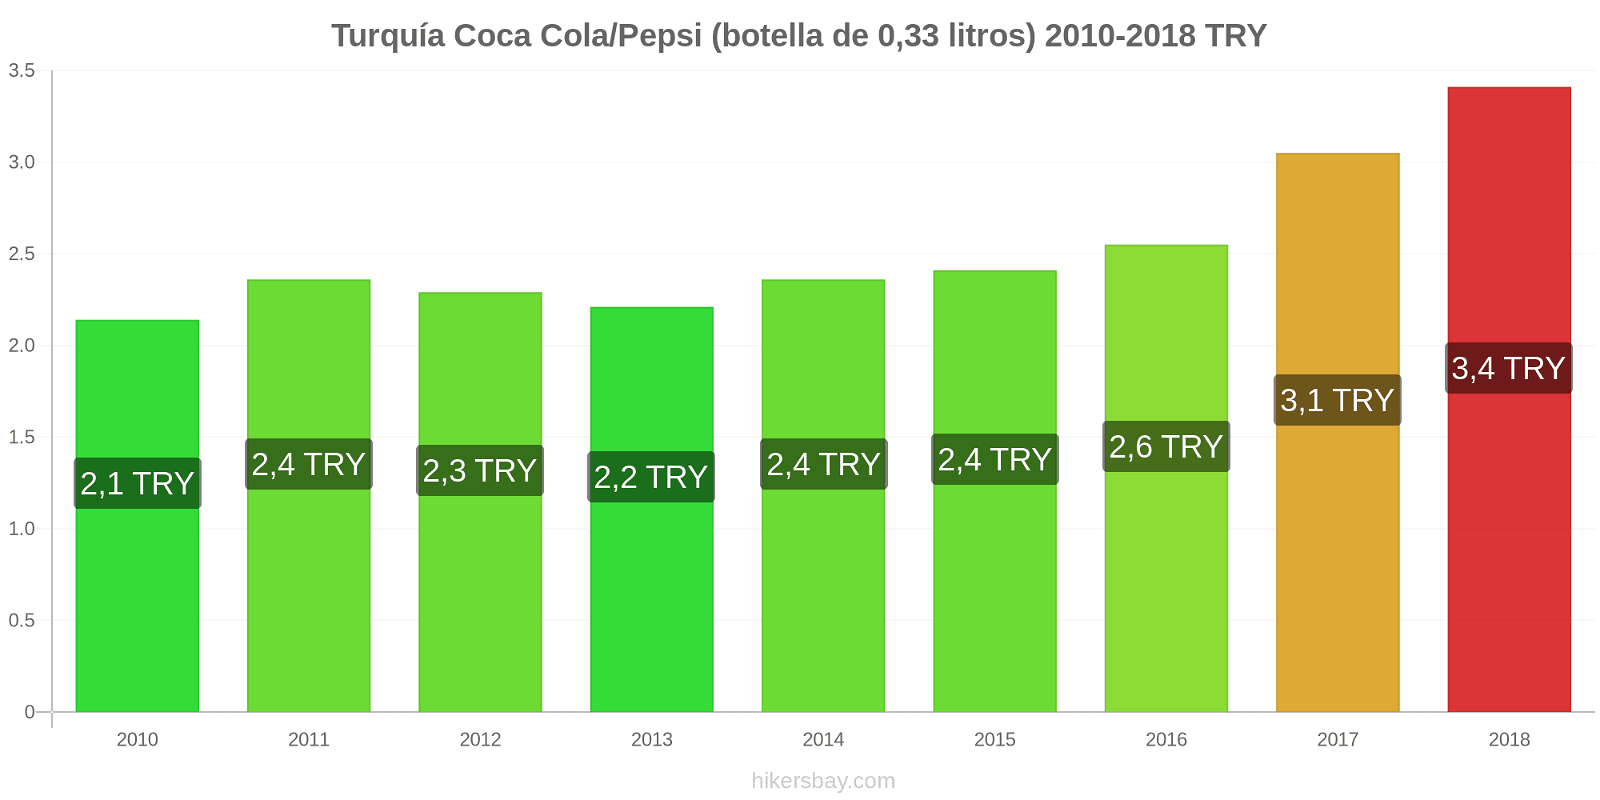 Turquía cambios de precios Coca-Cola/Pepsi (botella de 0.33 litros) hikersbay.com